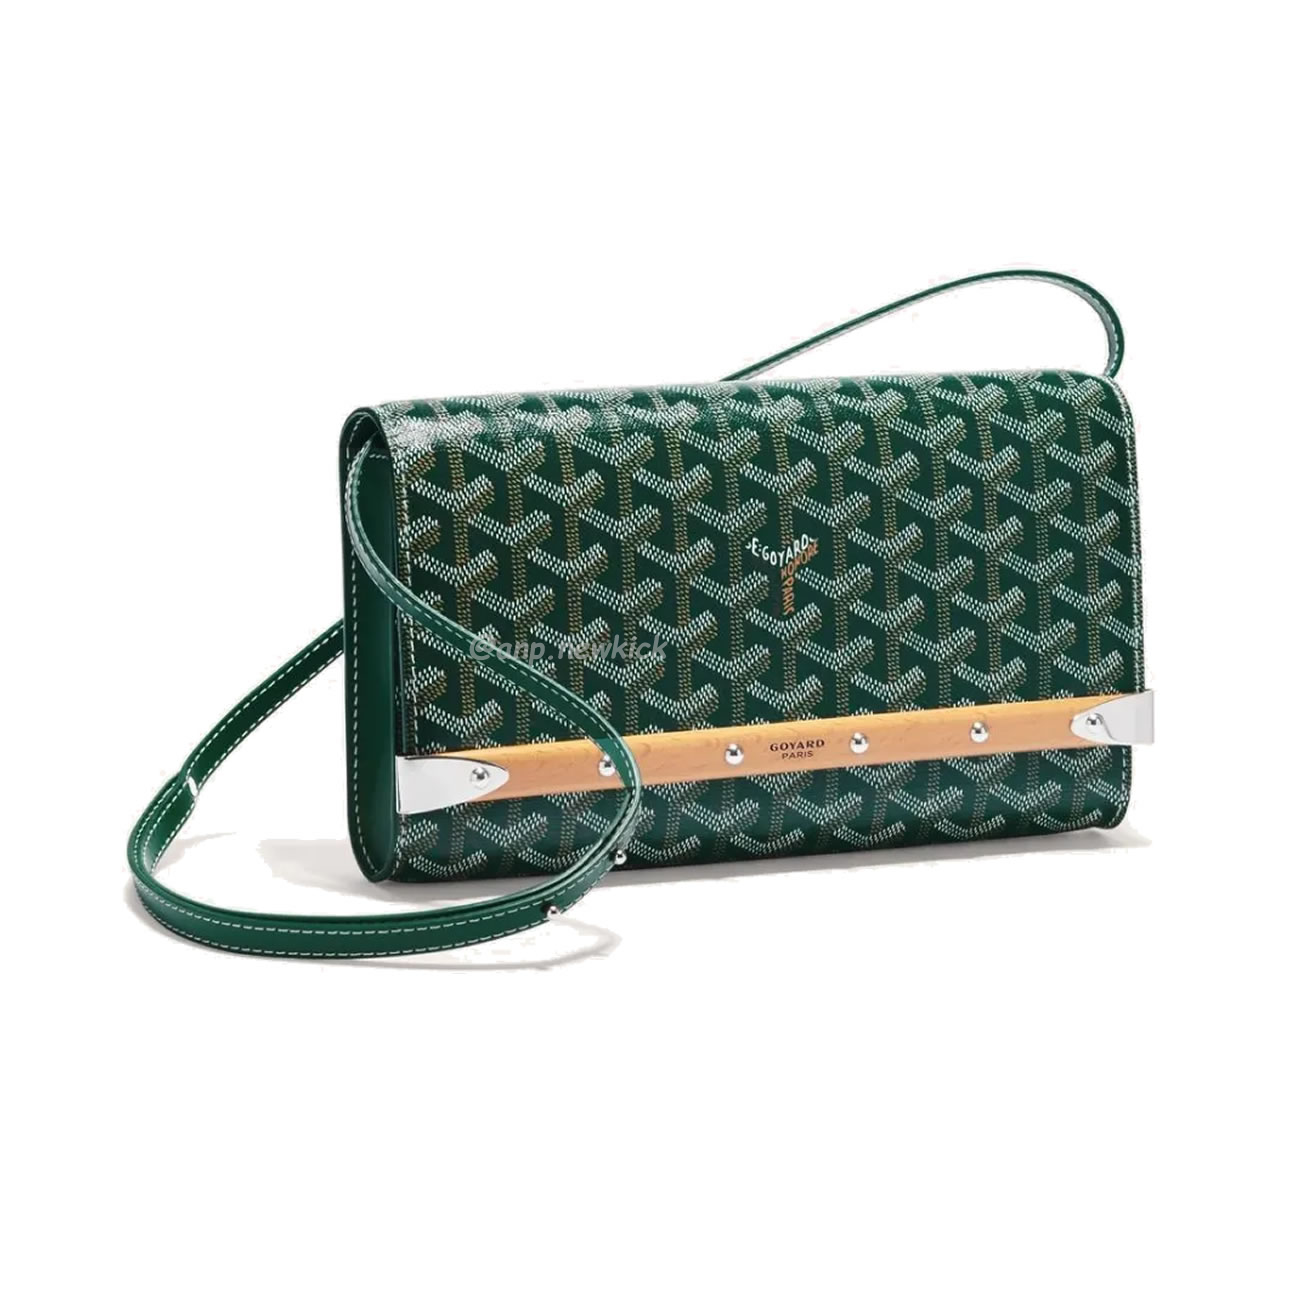 GOYARD Monte-Carlo Small handbag